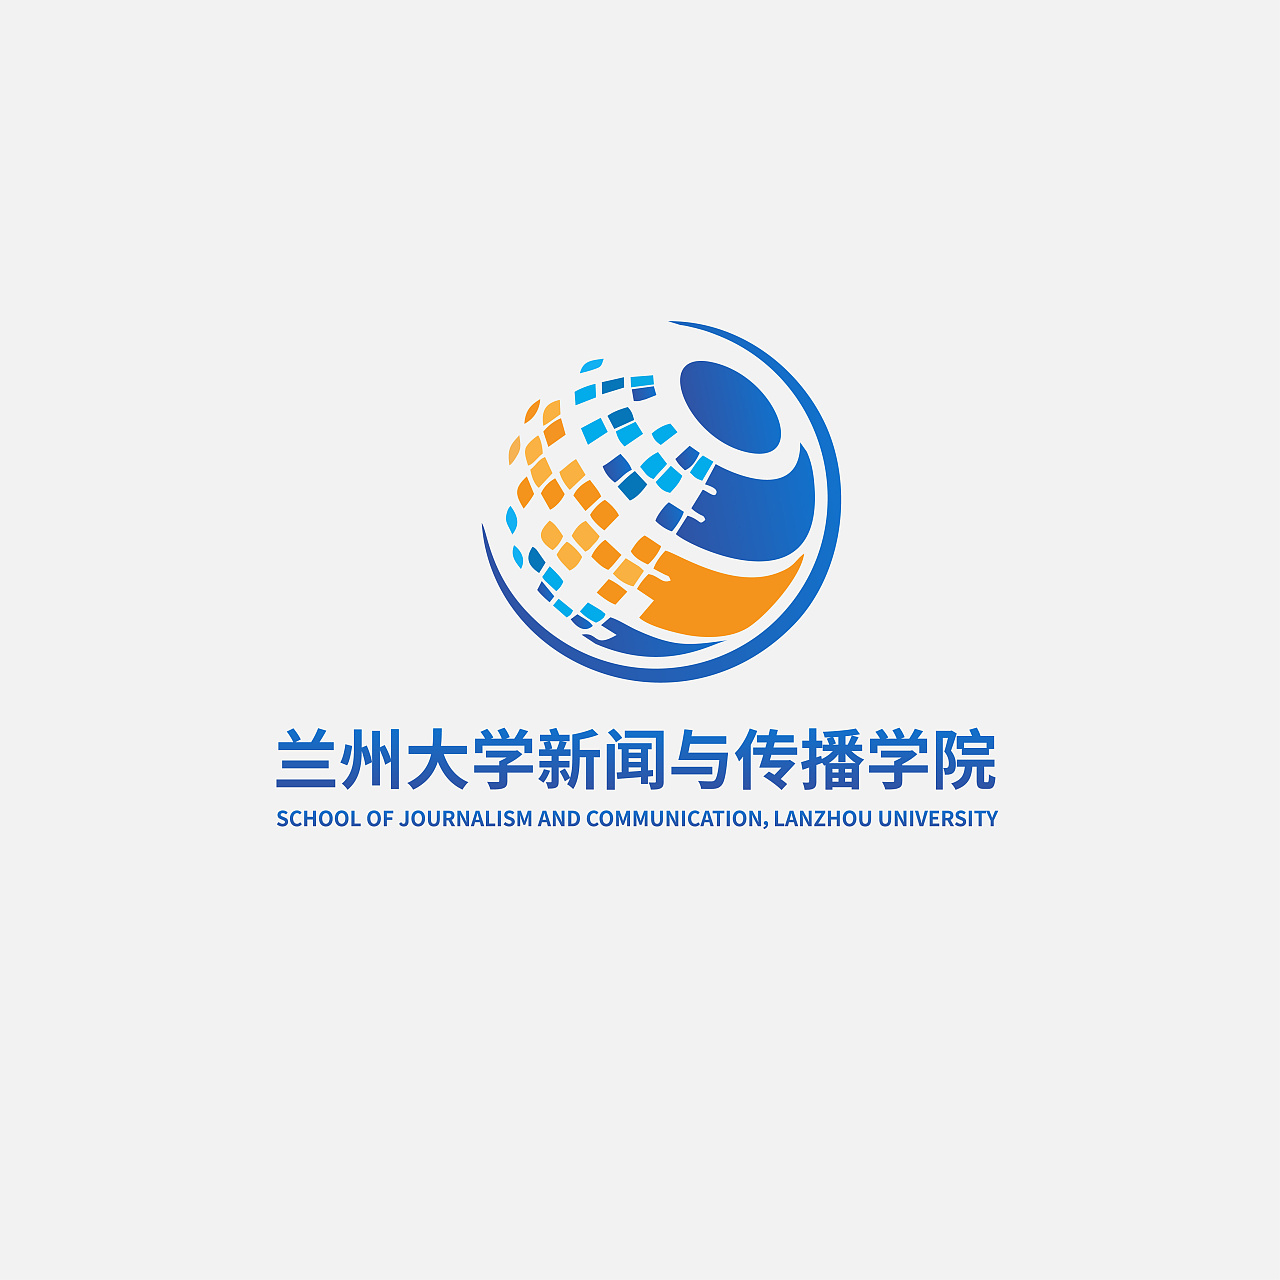 NBA押注平台:祁阳城市品牌标志及形象传播导语新闻发布会召开